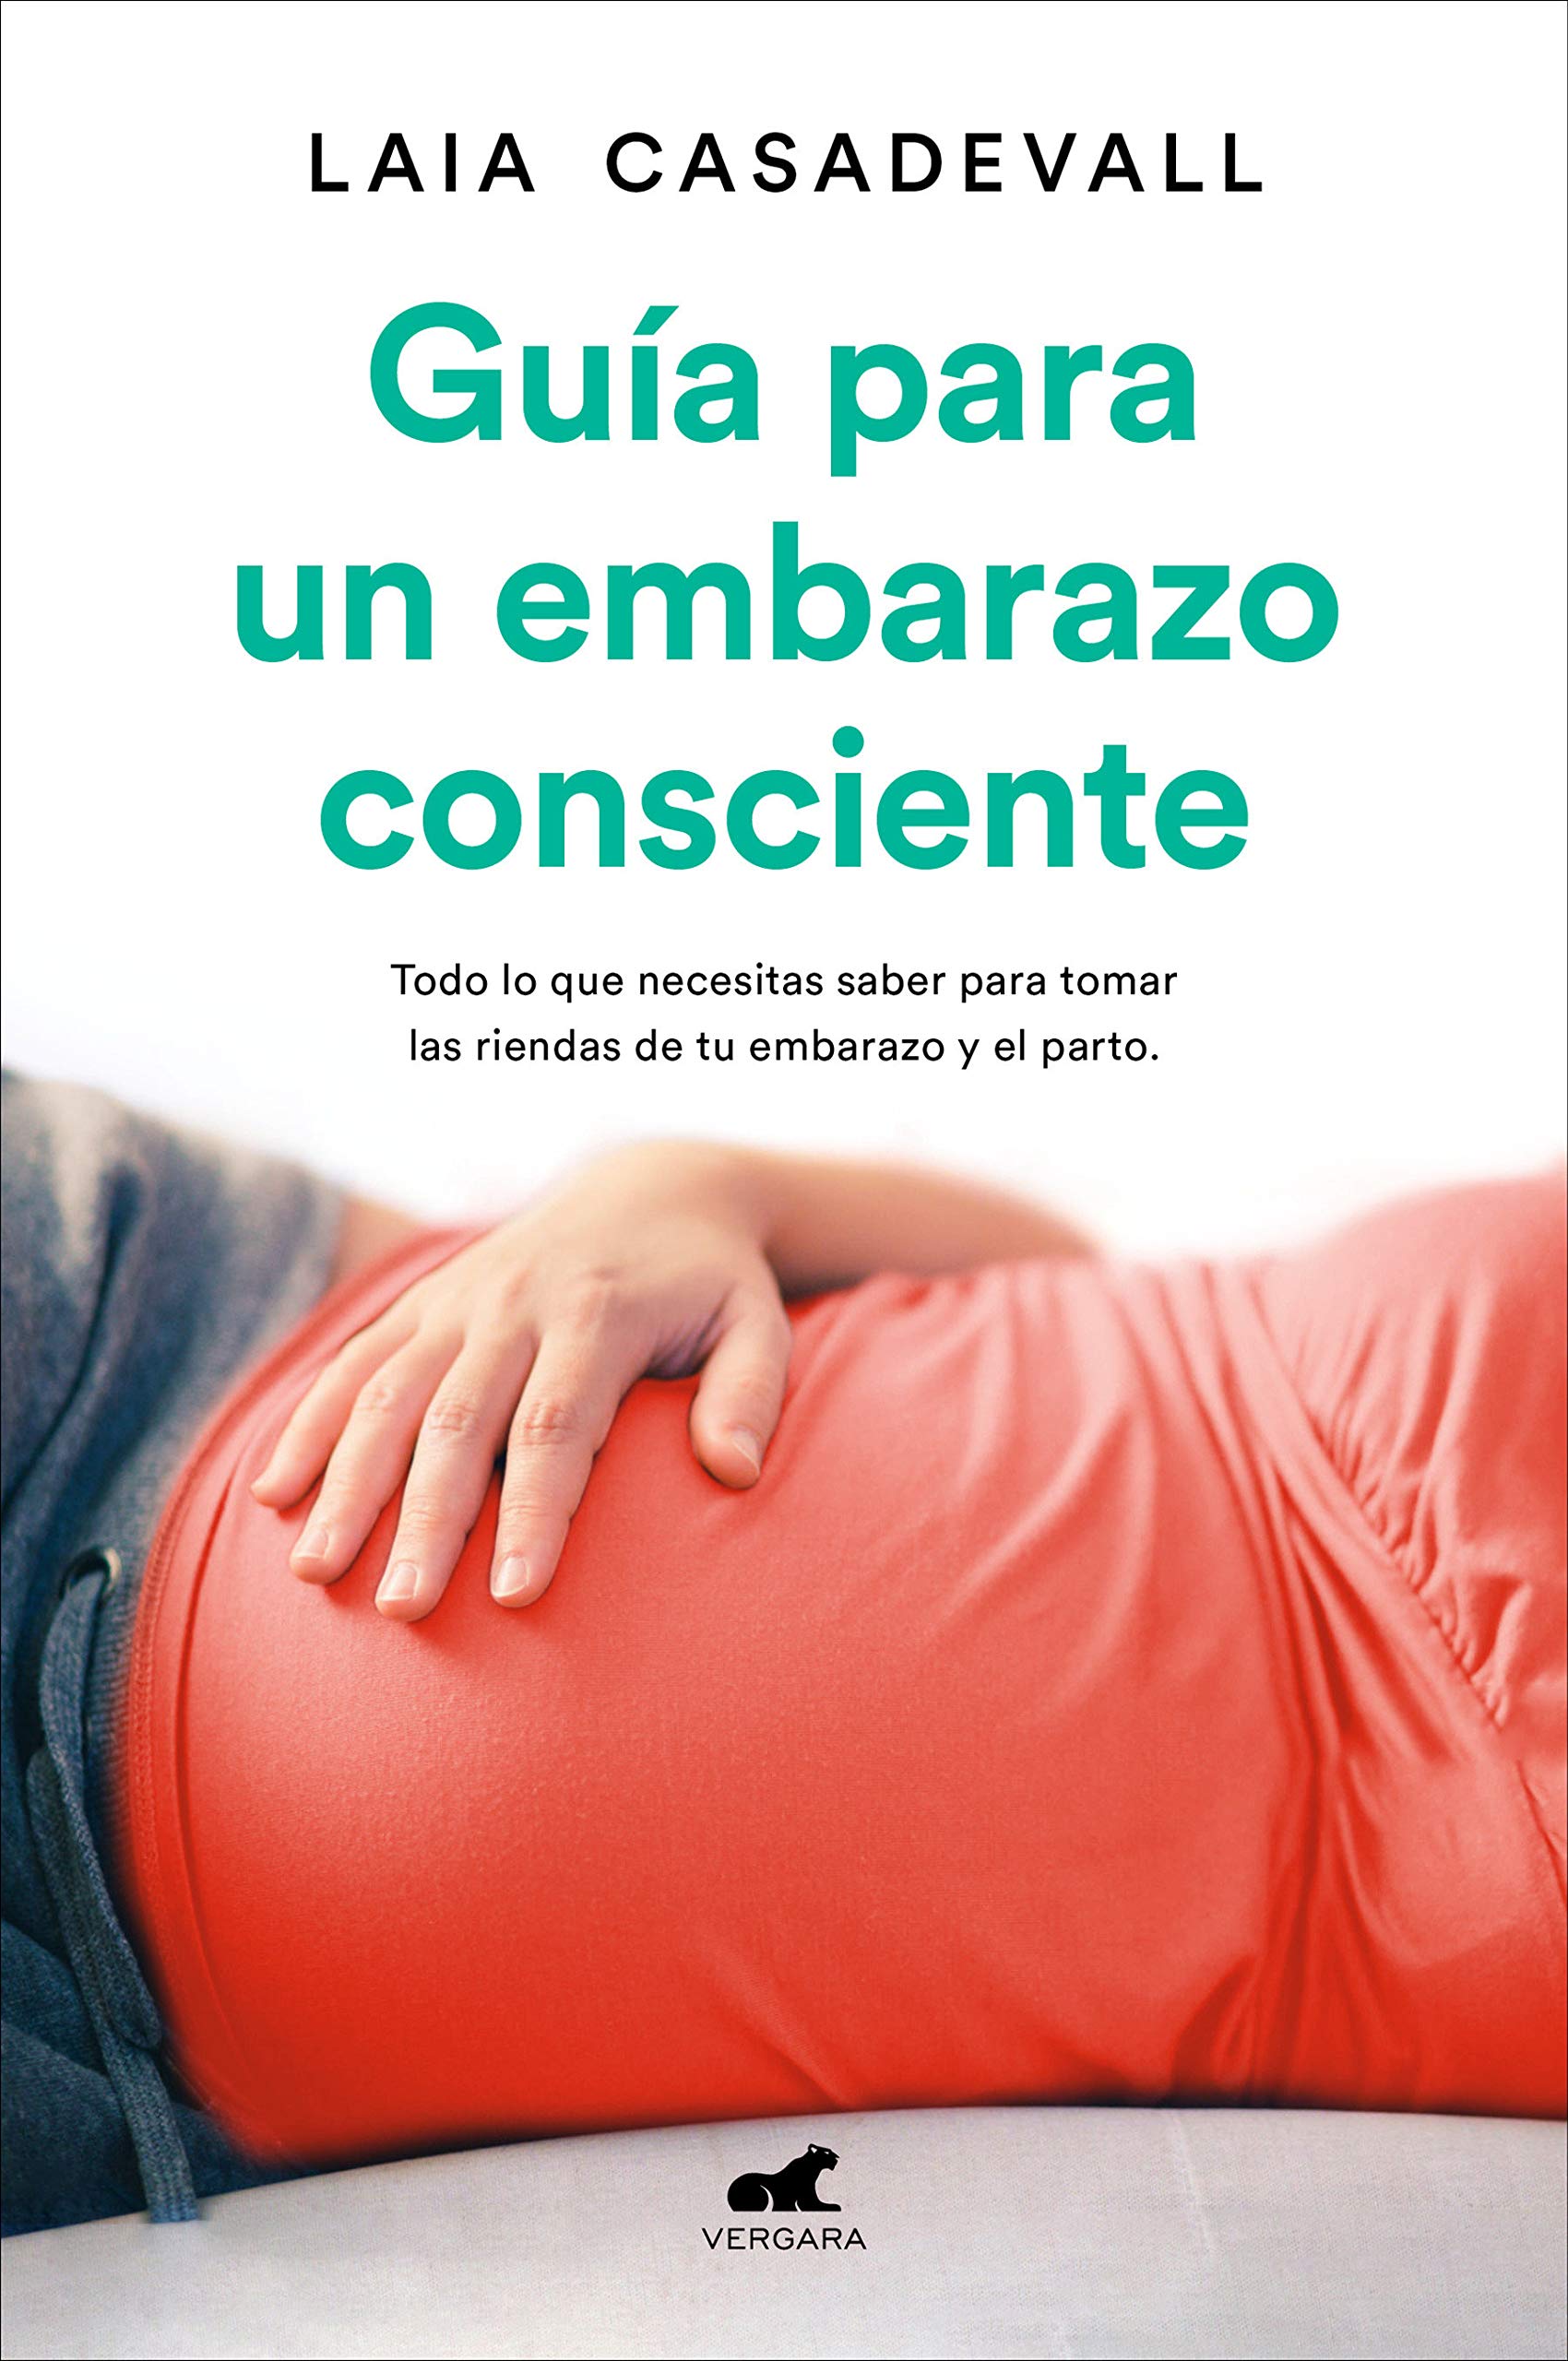 Guía para un embarazo consciente: Todo lo que necesitas saber para tomar las riendas de tu embarazo y el parto, de Laia Caadevall